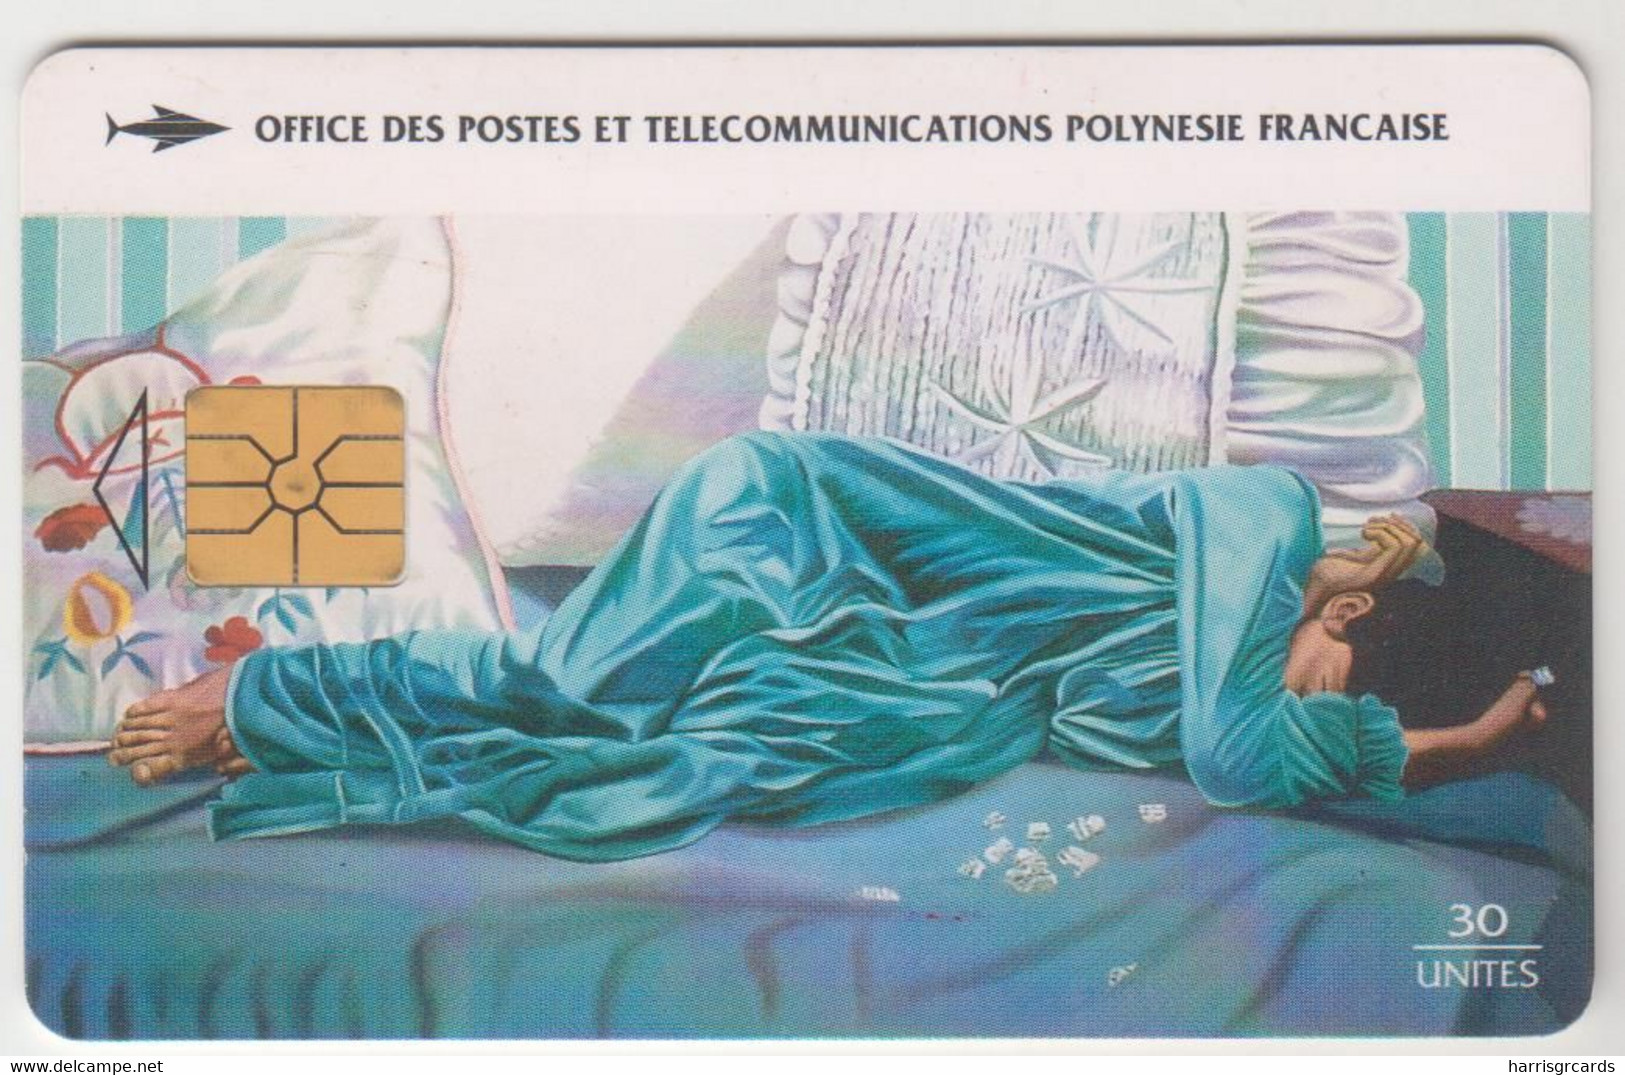 FRENCH POLYNESIA - La Lettre Déchirée, Vaea - 1980, GEM1A (Not Symmetric White/Gold), 30 U, Tirage 60.000, 01/97, Used - Polynésie Française